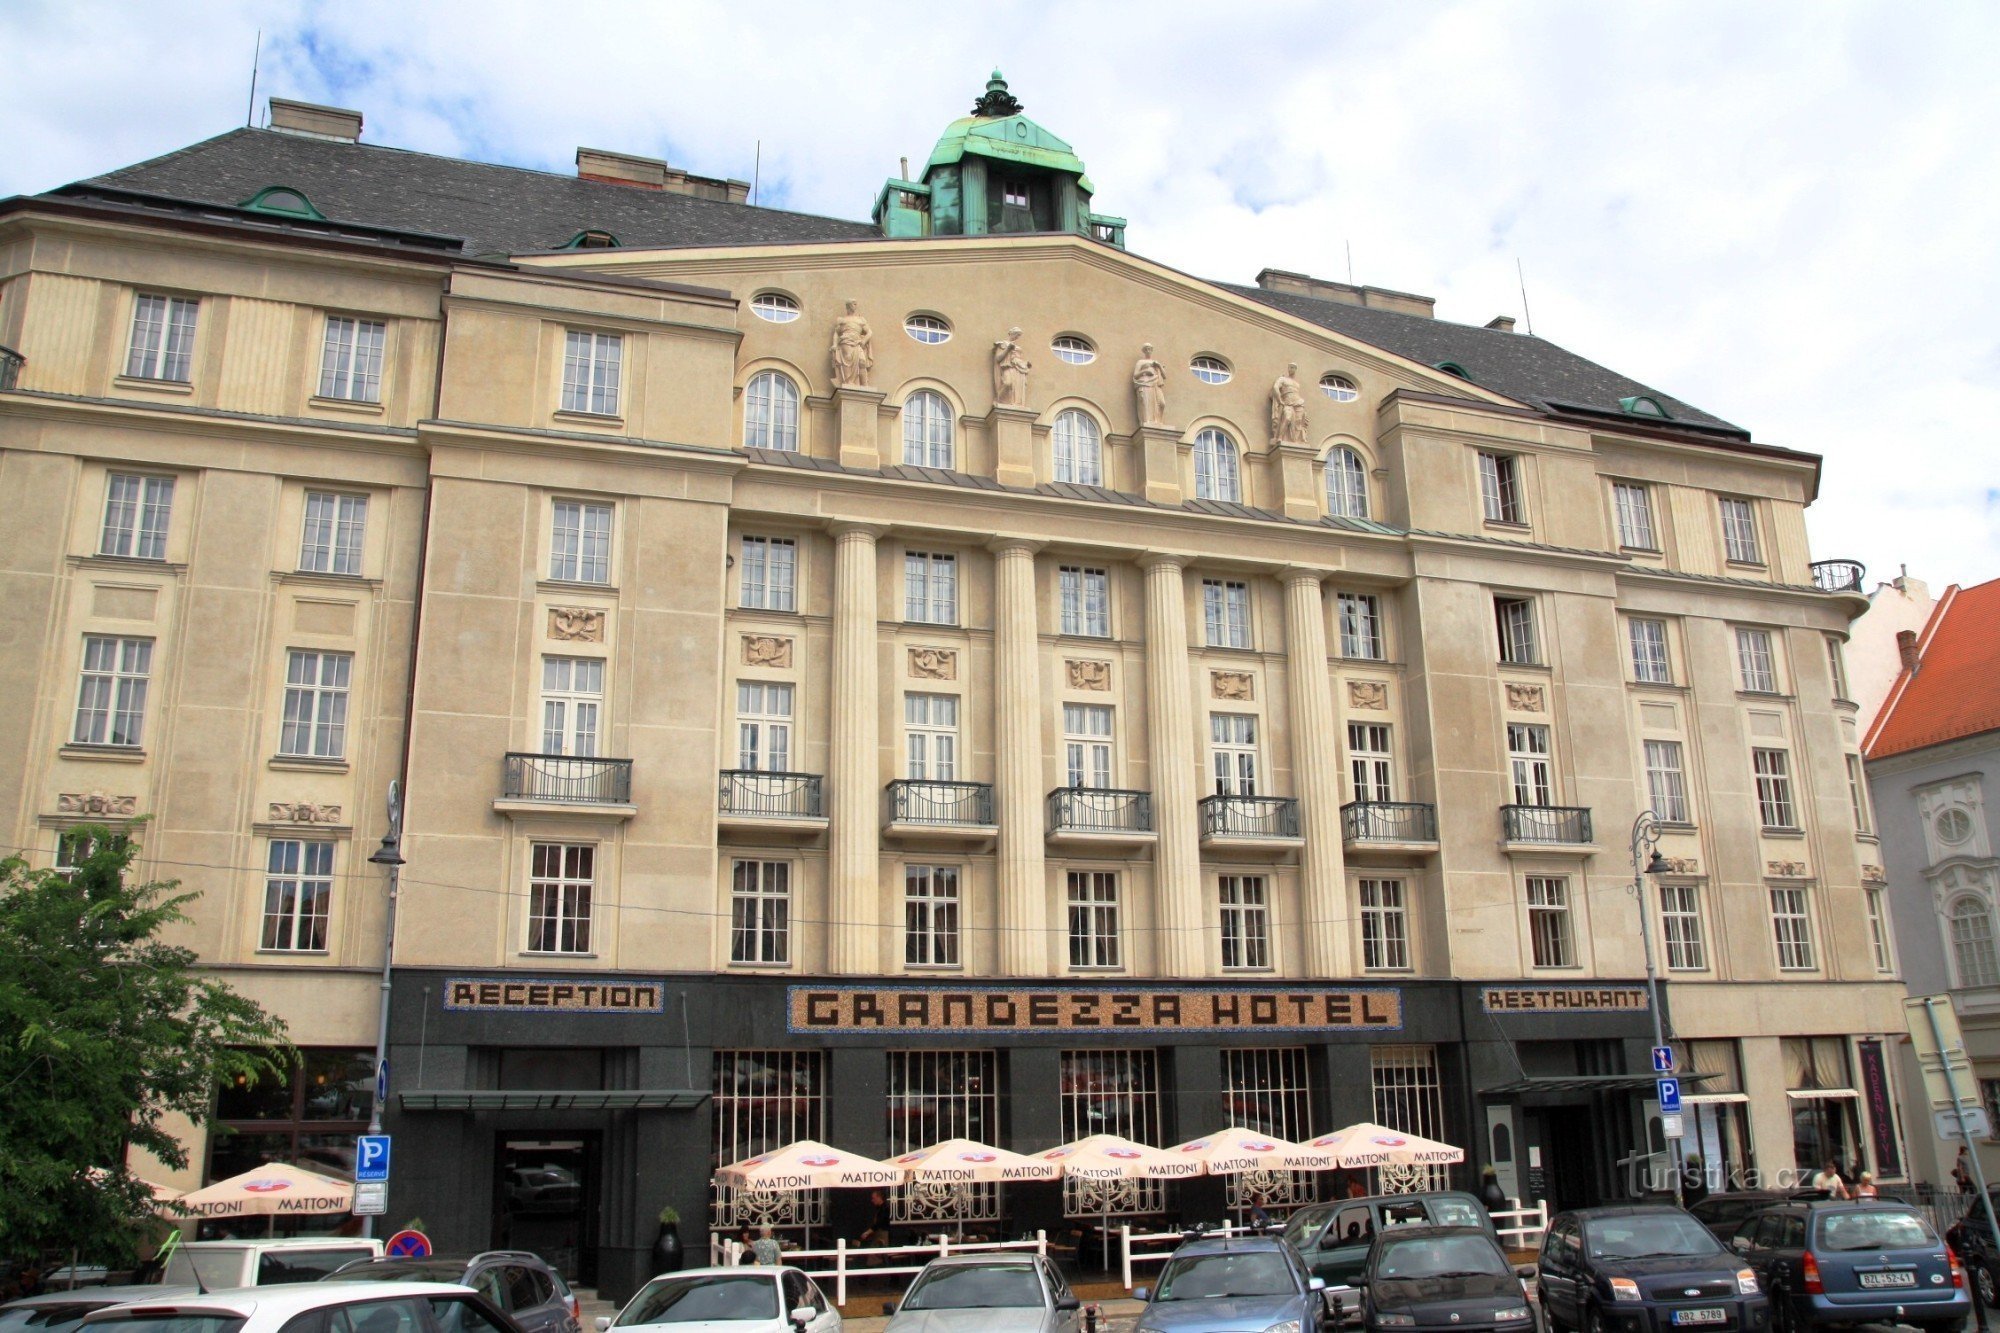 Brno - Cyrilometodejská zálažna trước đây, ngày nay là khách sạn Grandezza. Mặt tiền của tòa nhà po